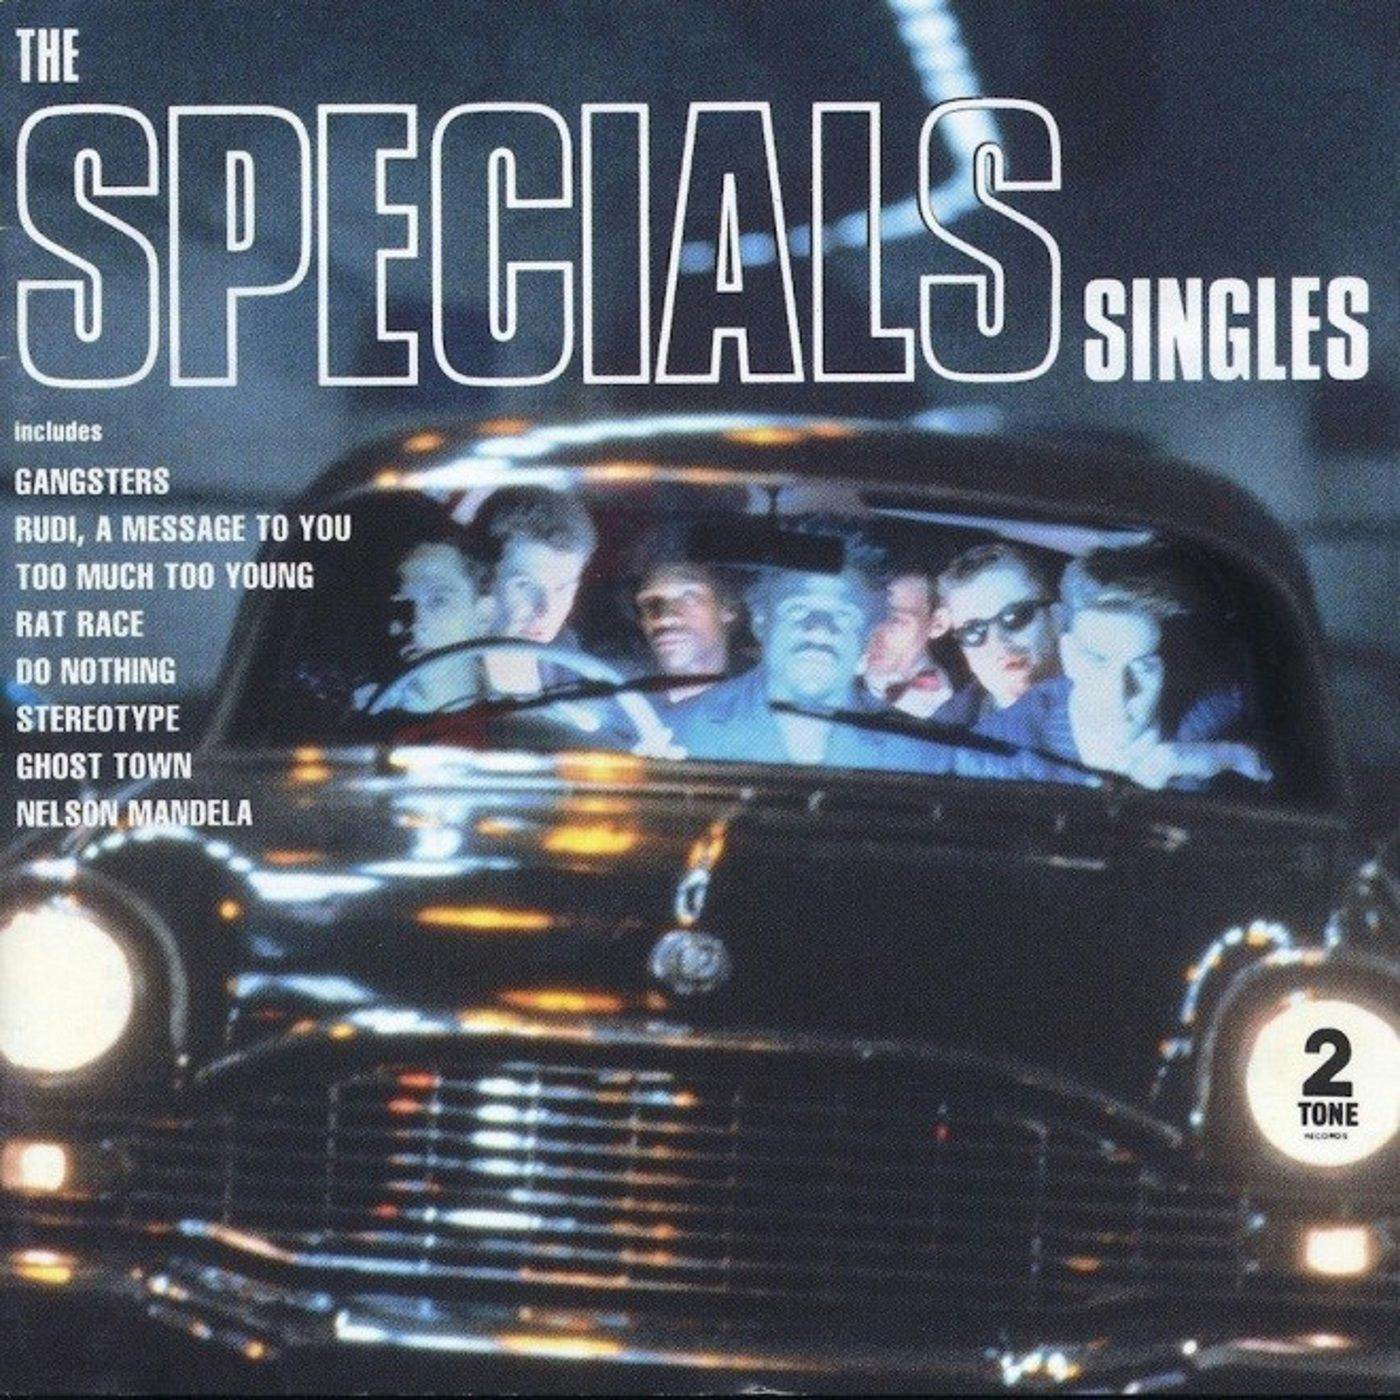 The Specials Singles Vinyl Record